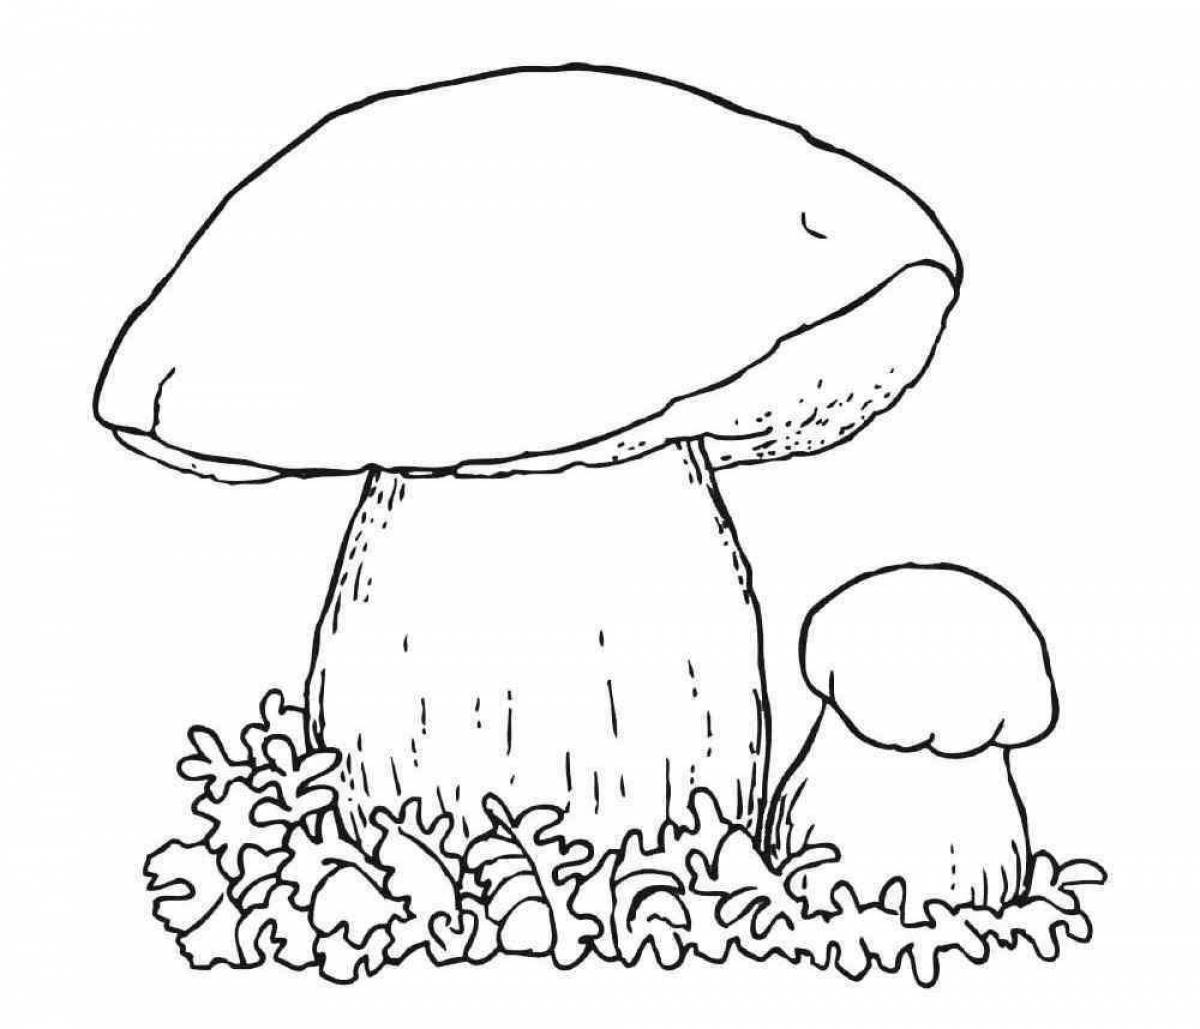 Incredible porcini mushroom coloring book for kids